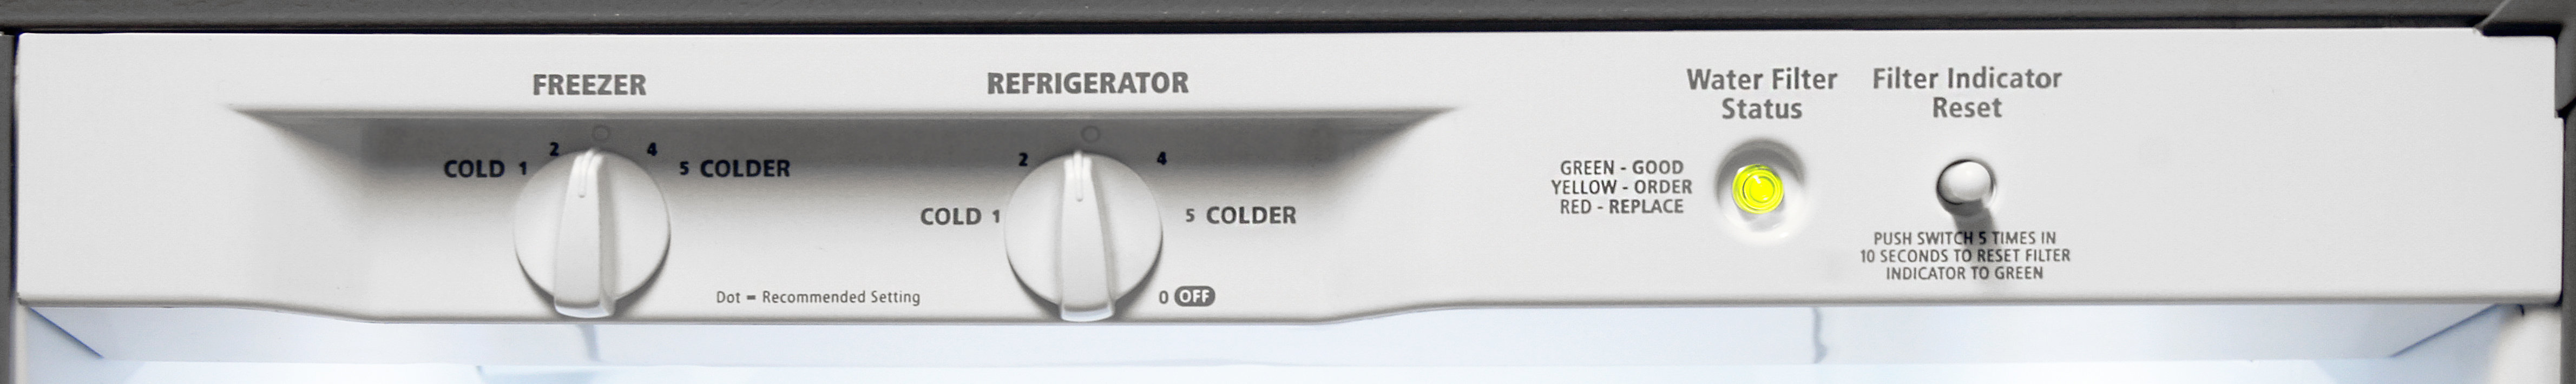 Whirlpool WRS325FDAM Refrigerator Review - Reviewed.com Refrigerators